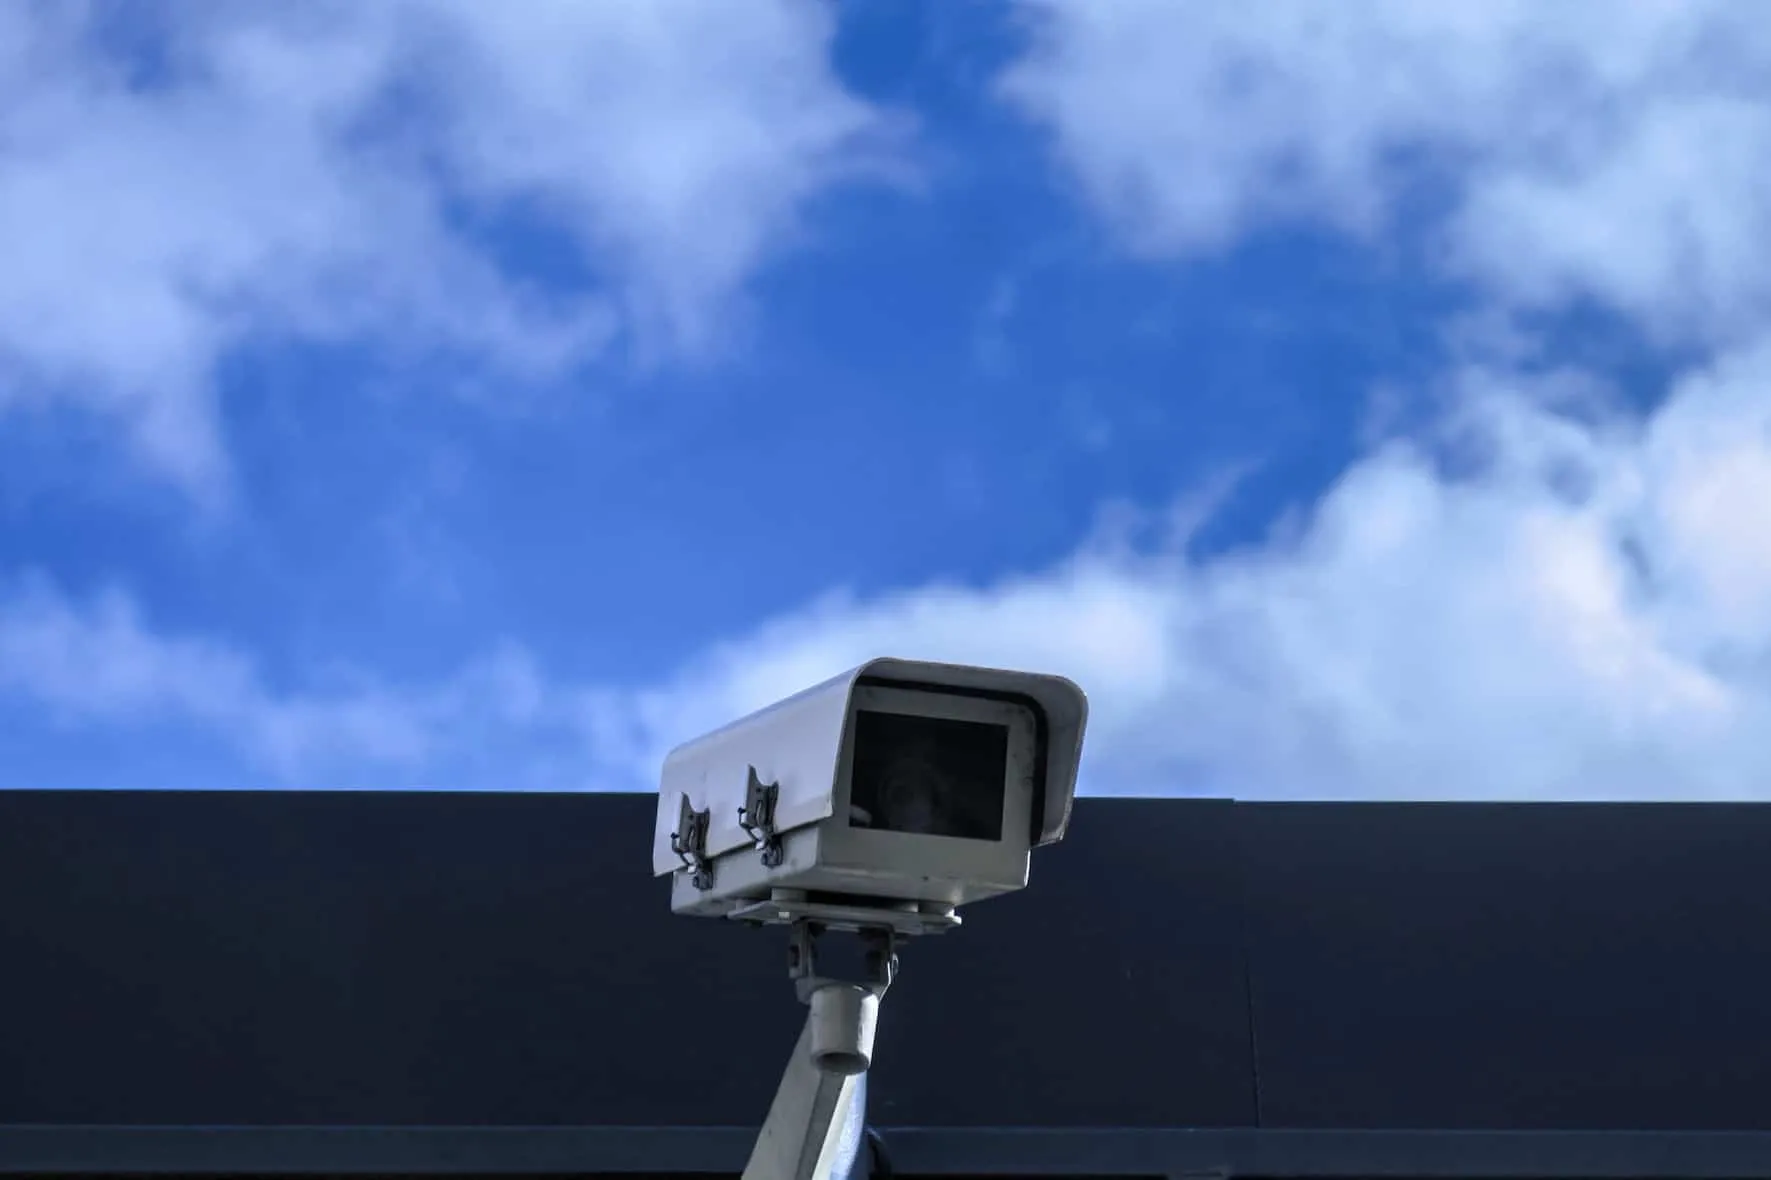 CCTV 카메라를 수정하는 방법이 깜박이는 문제입니까?  (수정 방법 8가지)